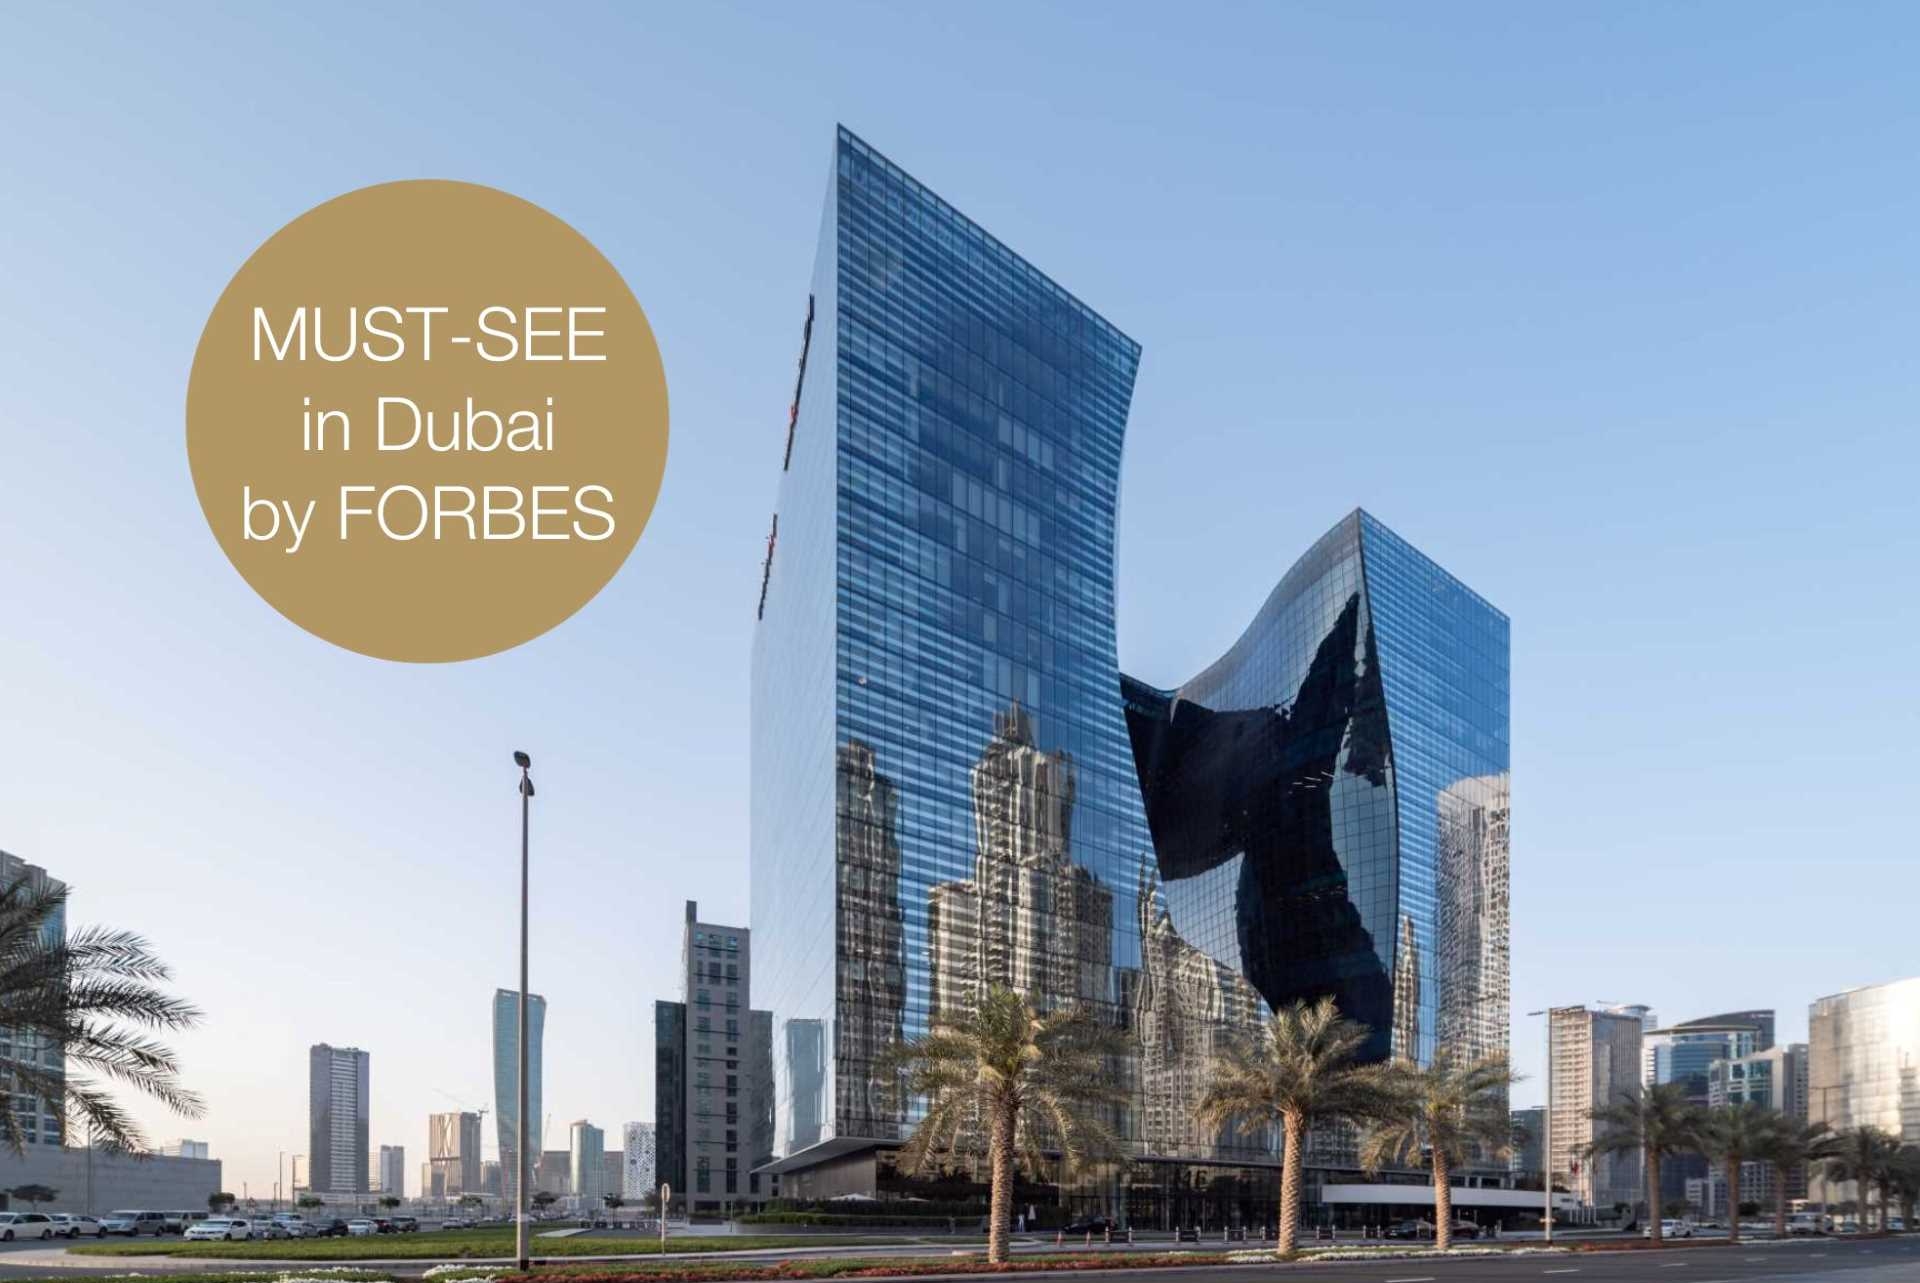 Der Opus Tower is ein must-see in Dubai!